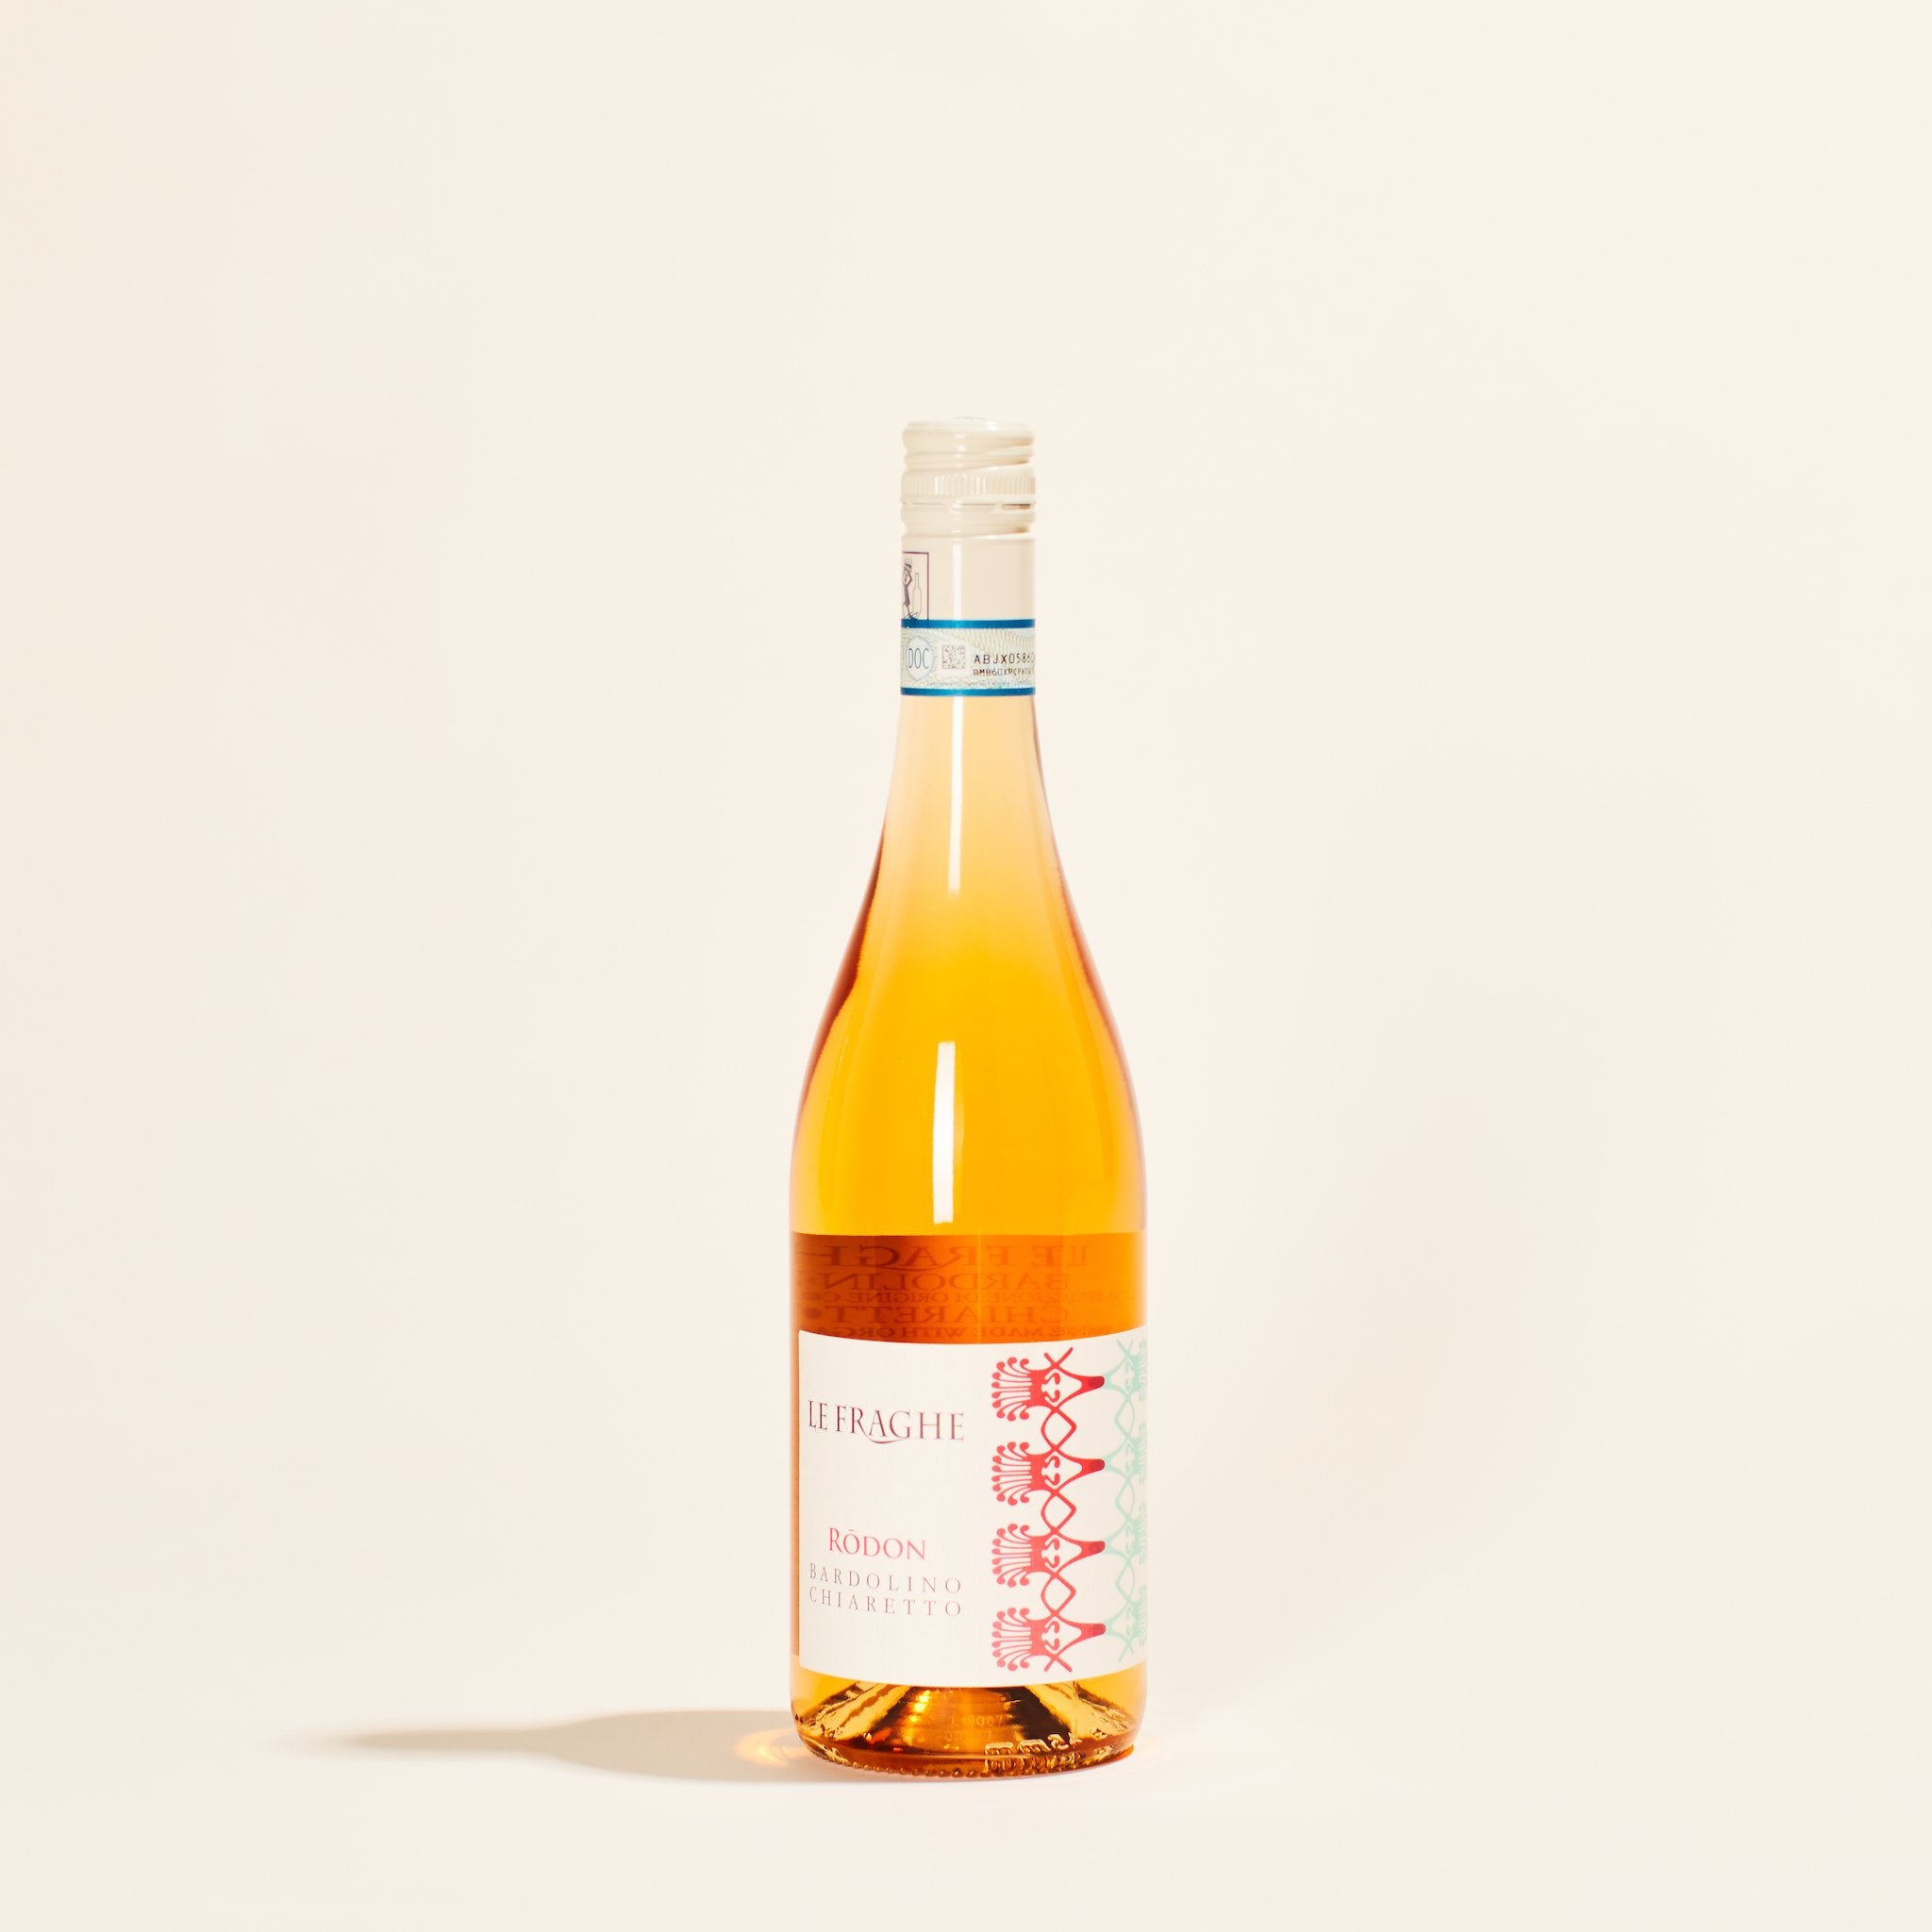 rodon bardolino chiaretto le fraghe natural orange wine veneto italy